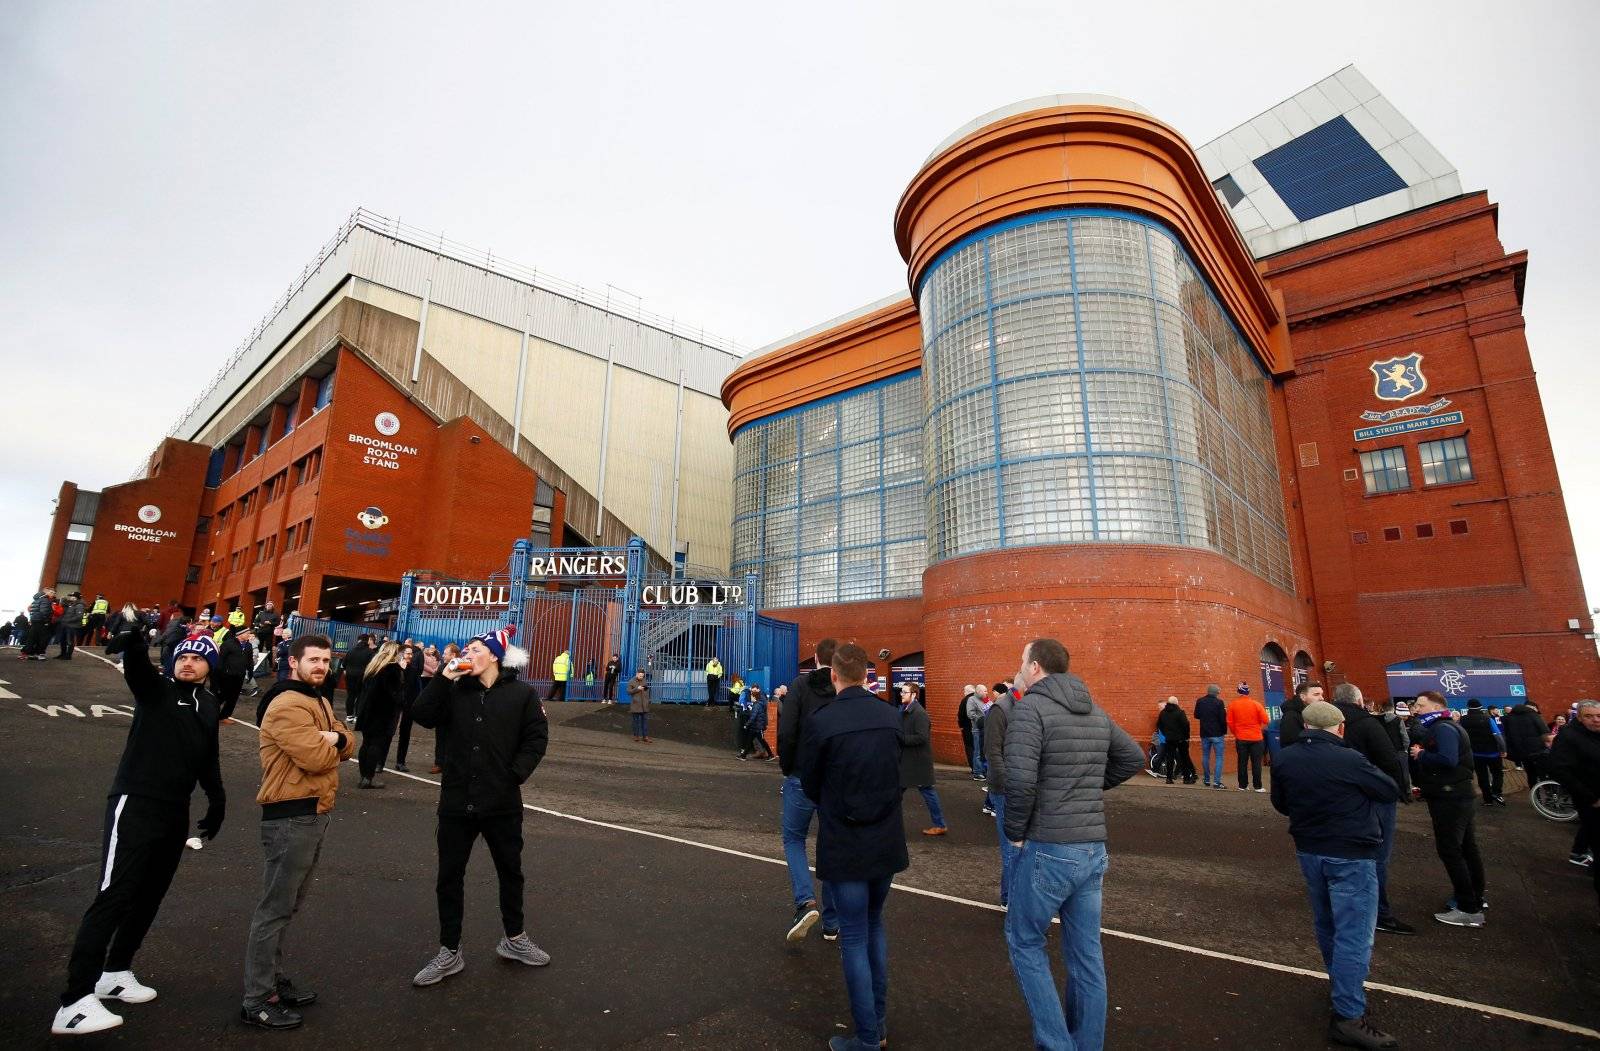 Glasgow Rangers: Fans desperate to sign Andreas Skov Olsen - Rangers News